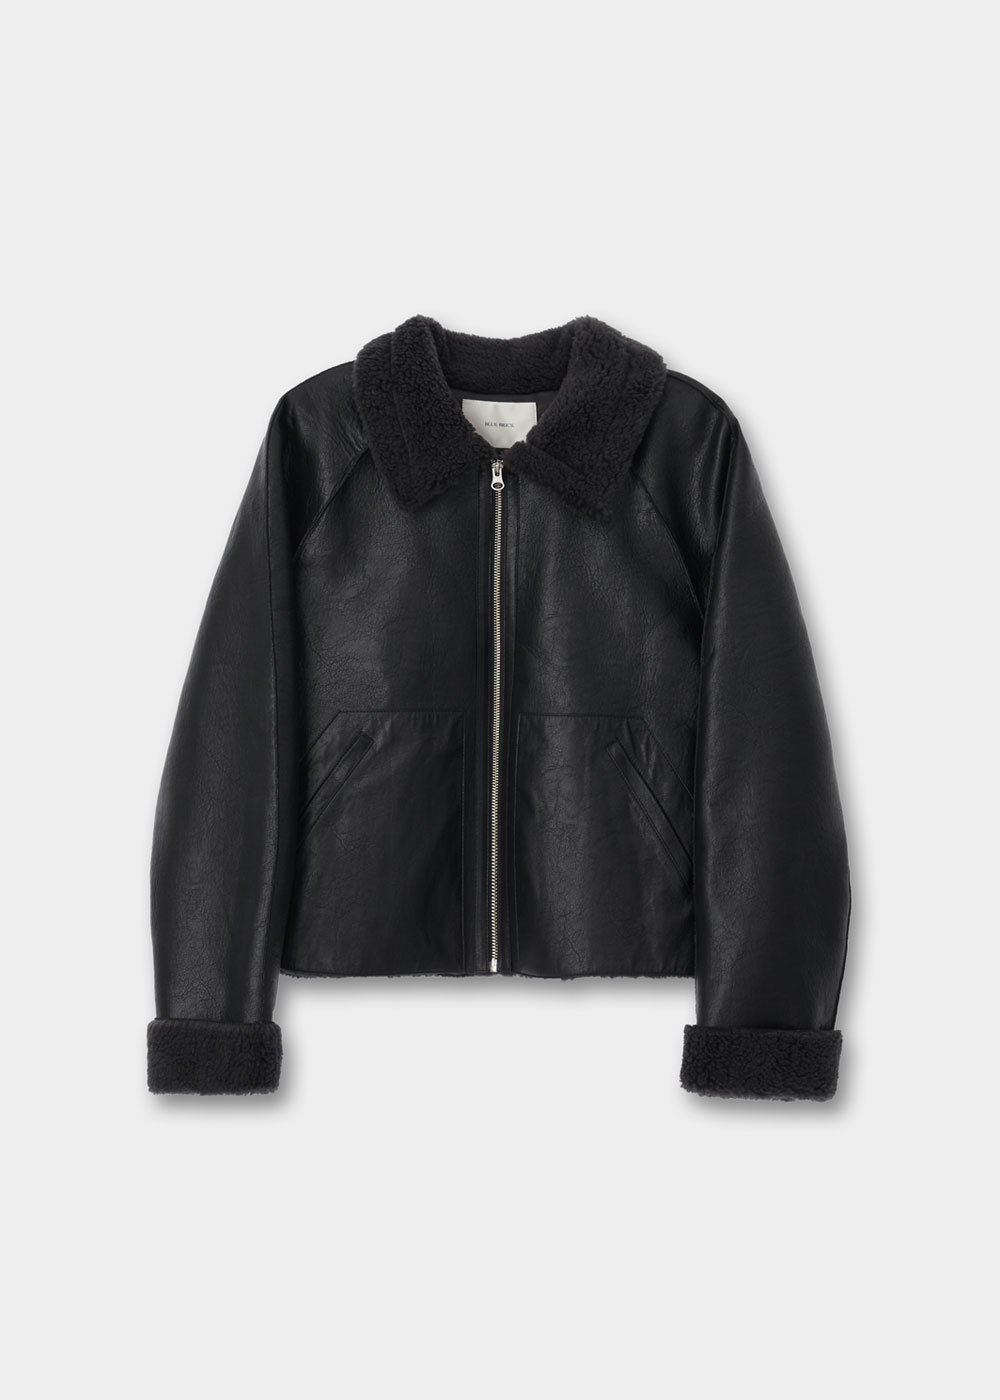 블루브릭,[B급/샘플상품] Short shearling coat (black)